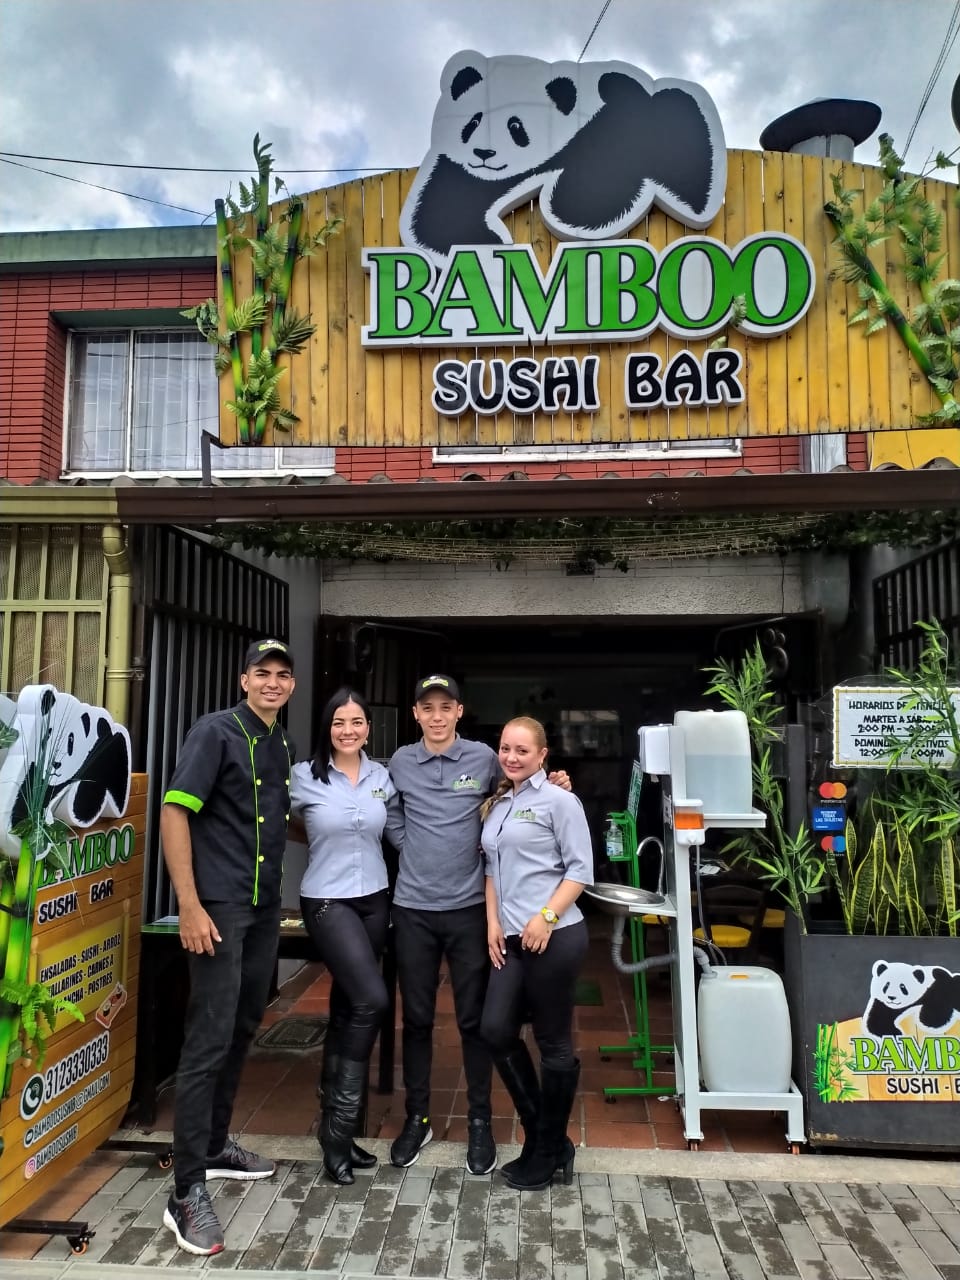 Bamboo Sushi Bar.